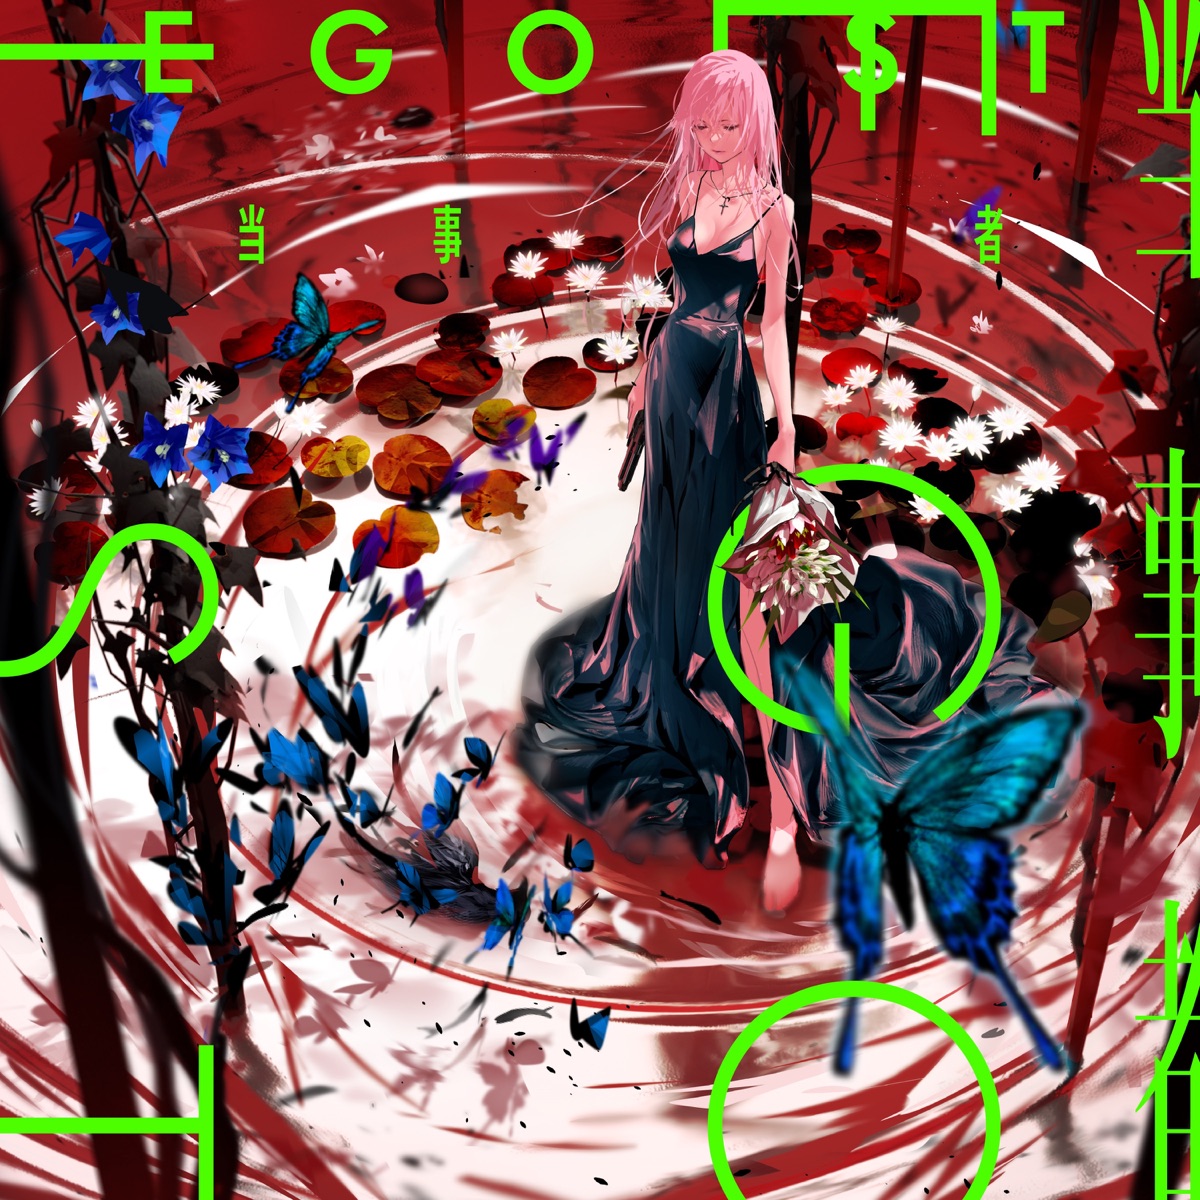 Cover art for『EGOIST - Toujisha』from the release『Toujisha』